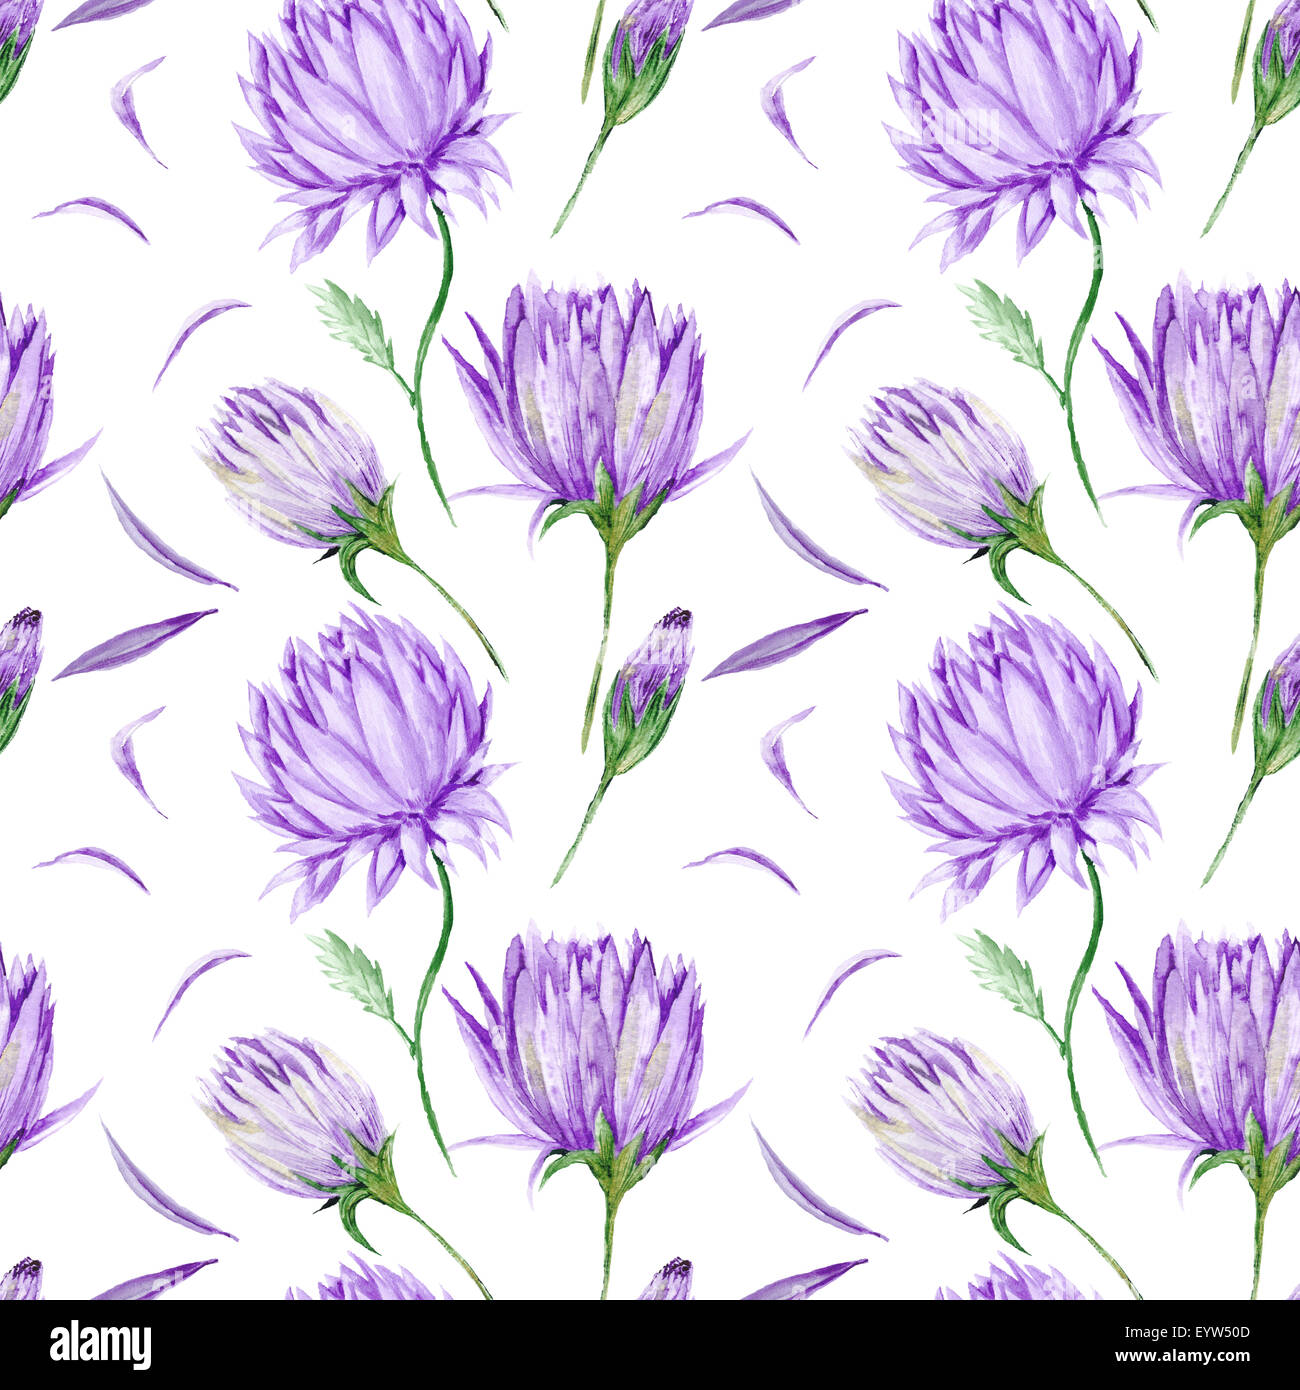 Arte creative acquerello su carta da parati con dipinte a mano e fiori viola isolato su sfondo bianco per la progettazione Foto Stock